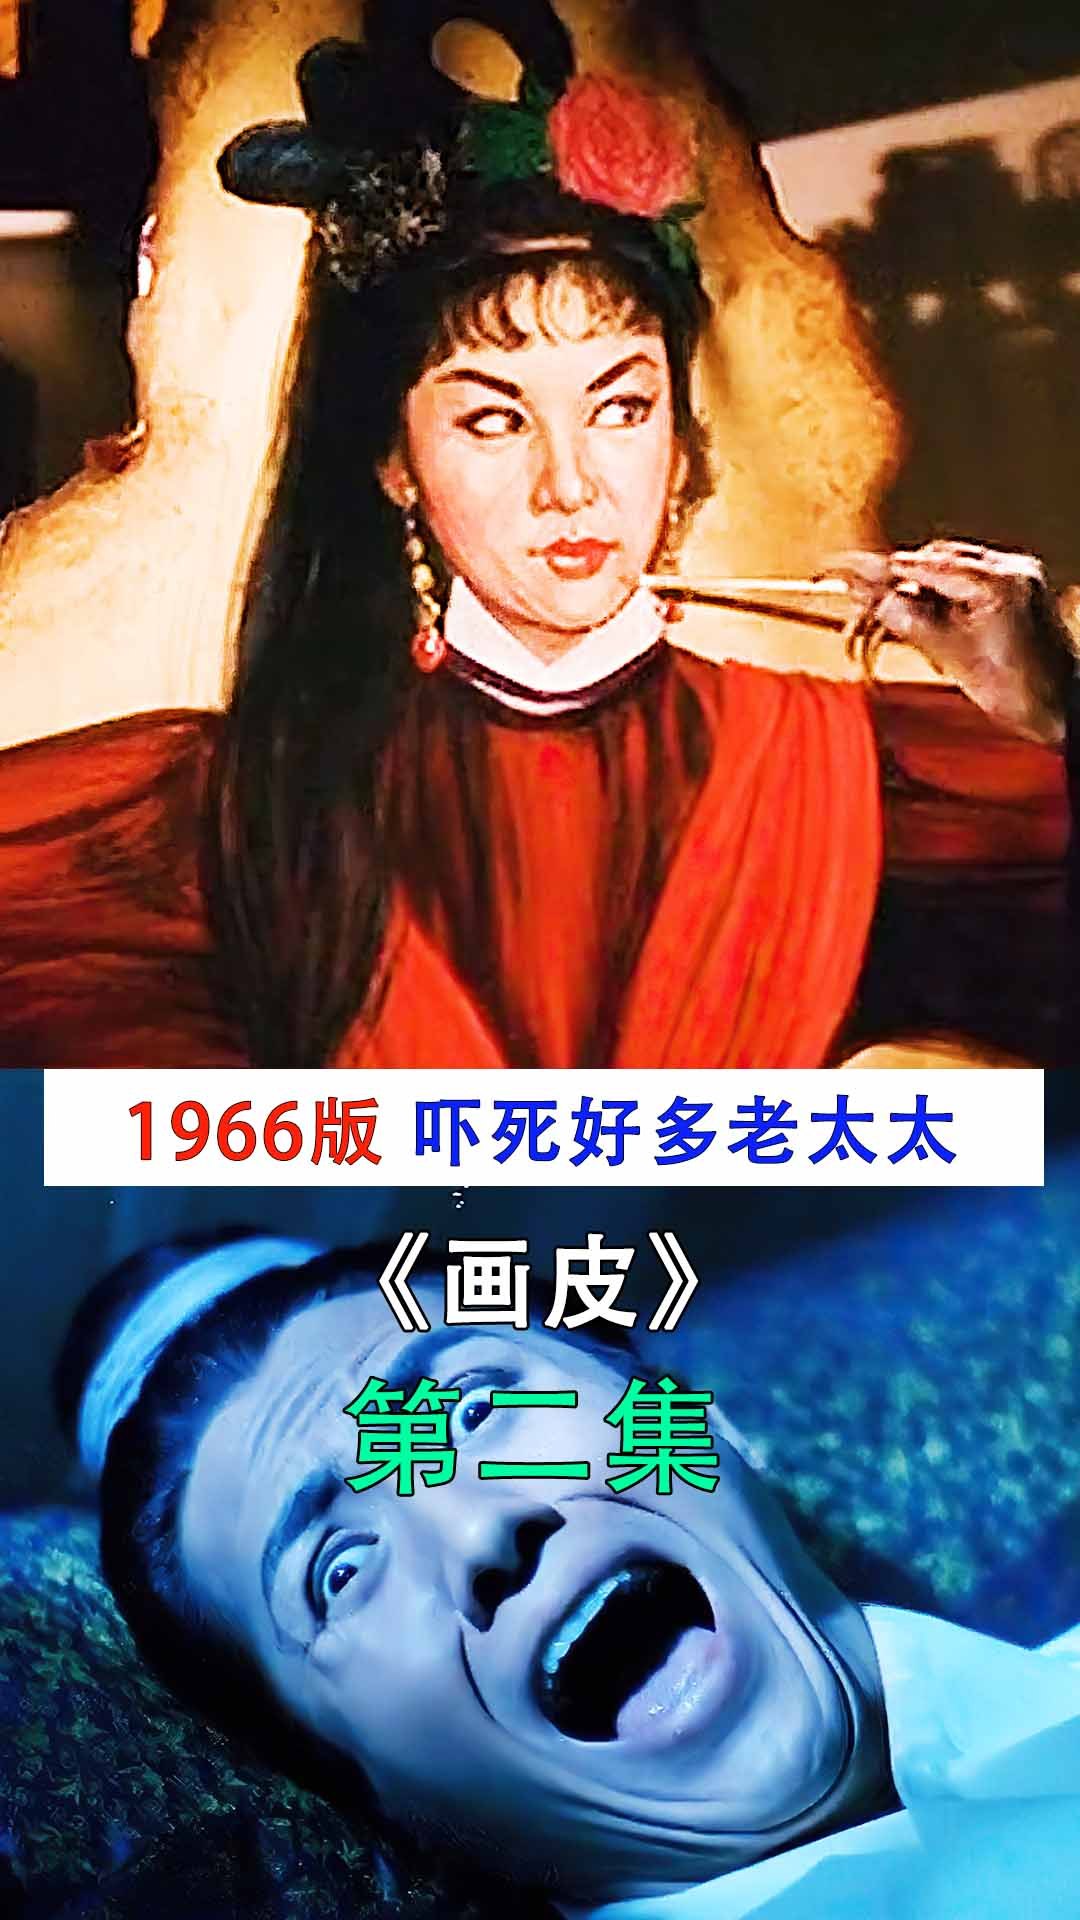 2中国第一部恐怖片,1966年上映时,吓死好多老太太《画皮》